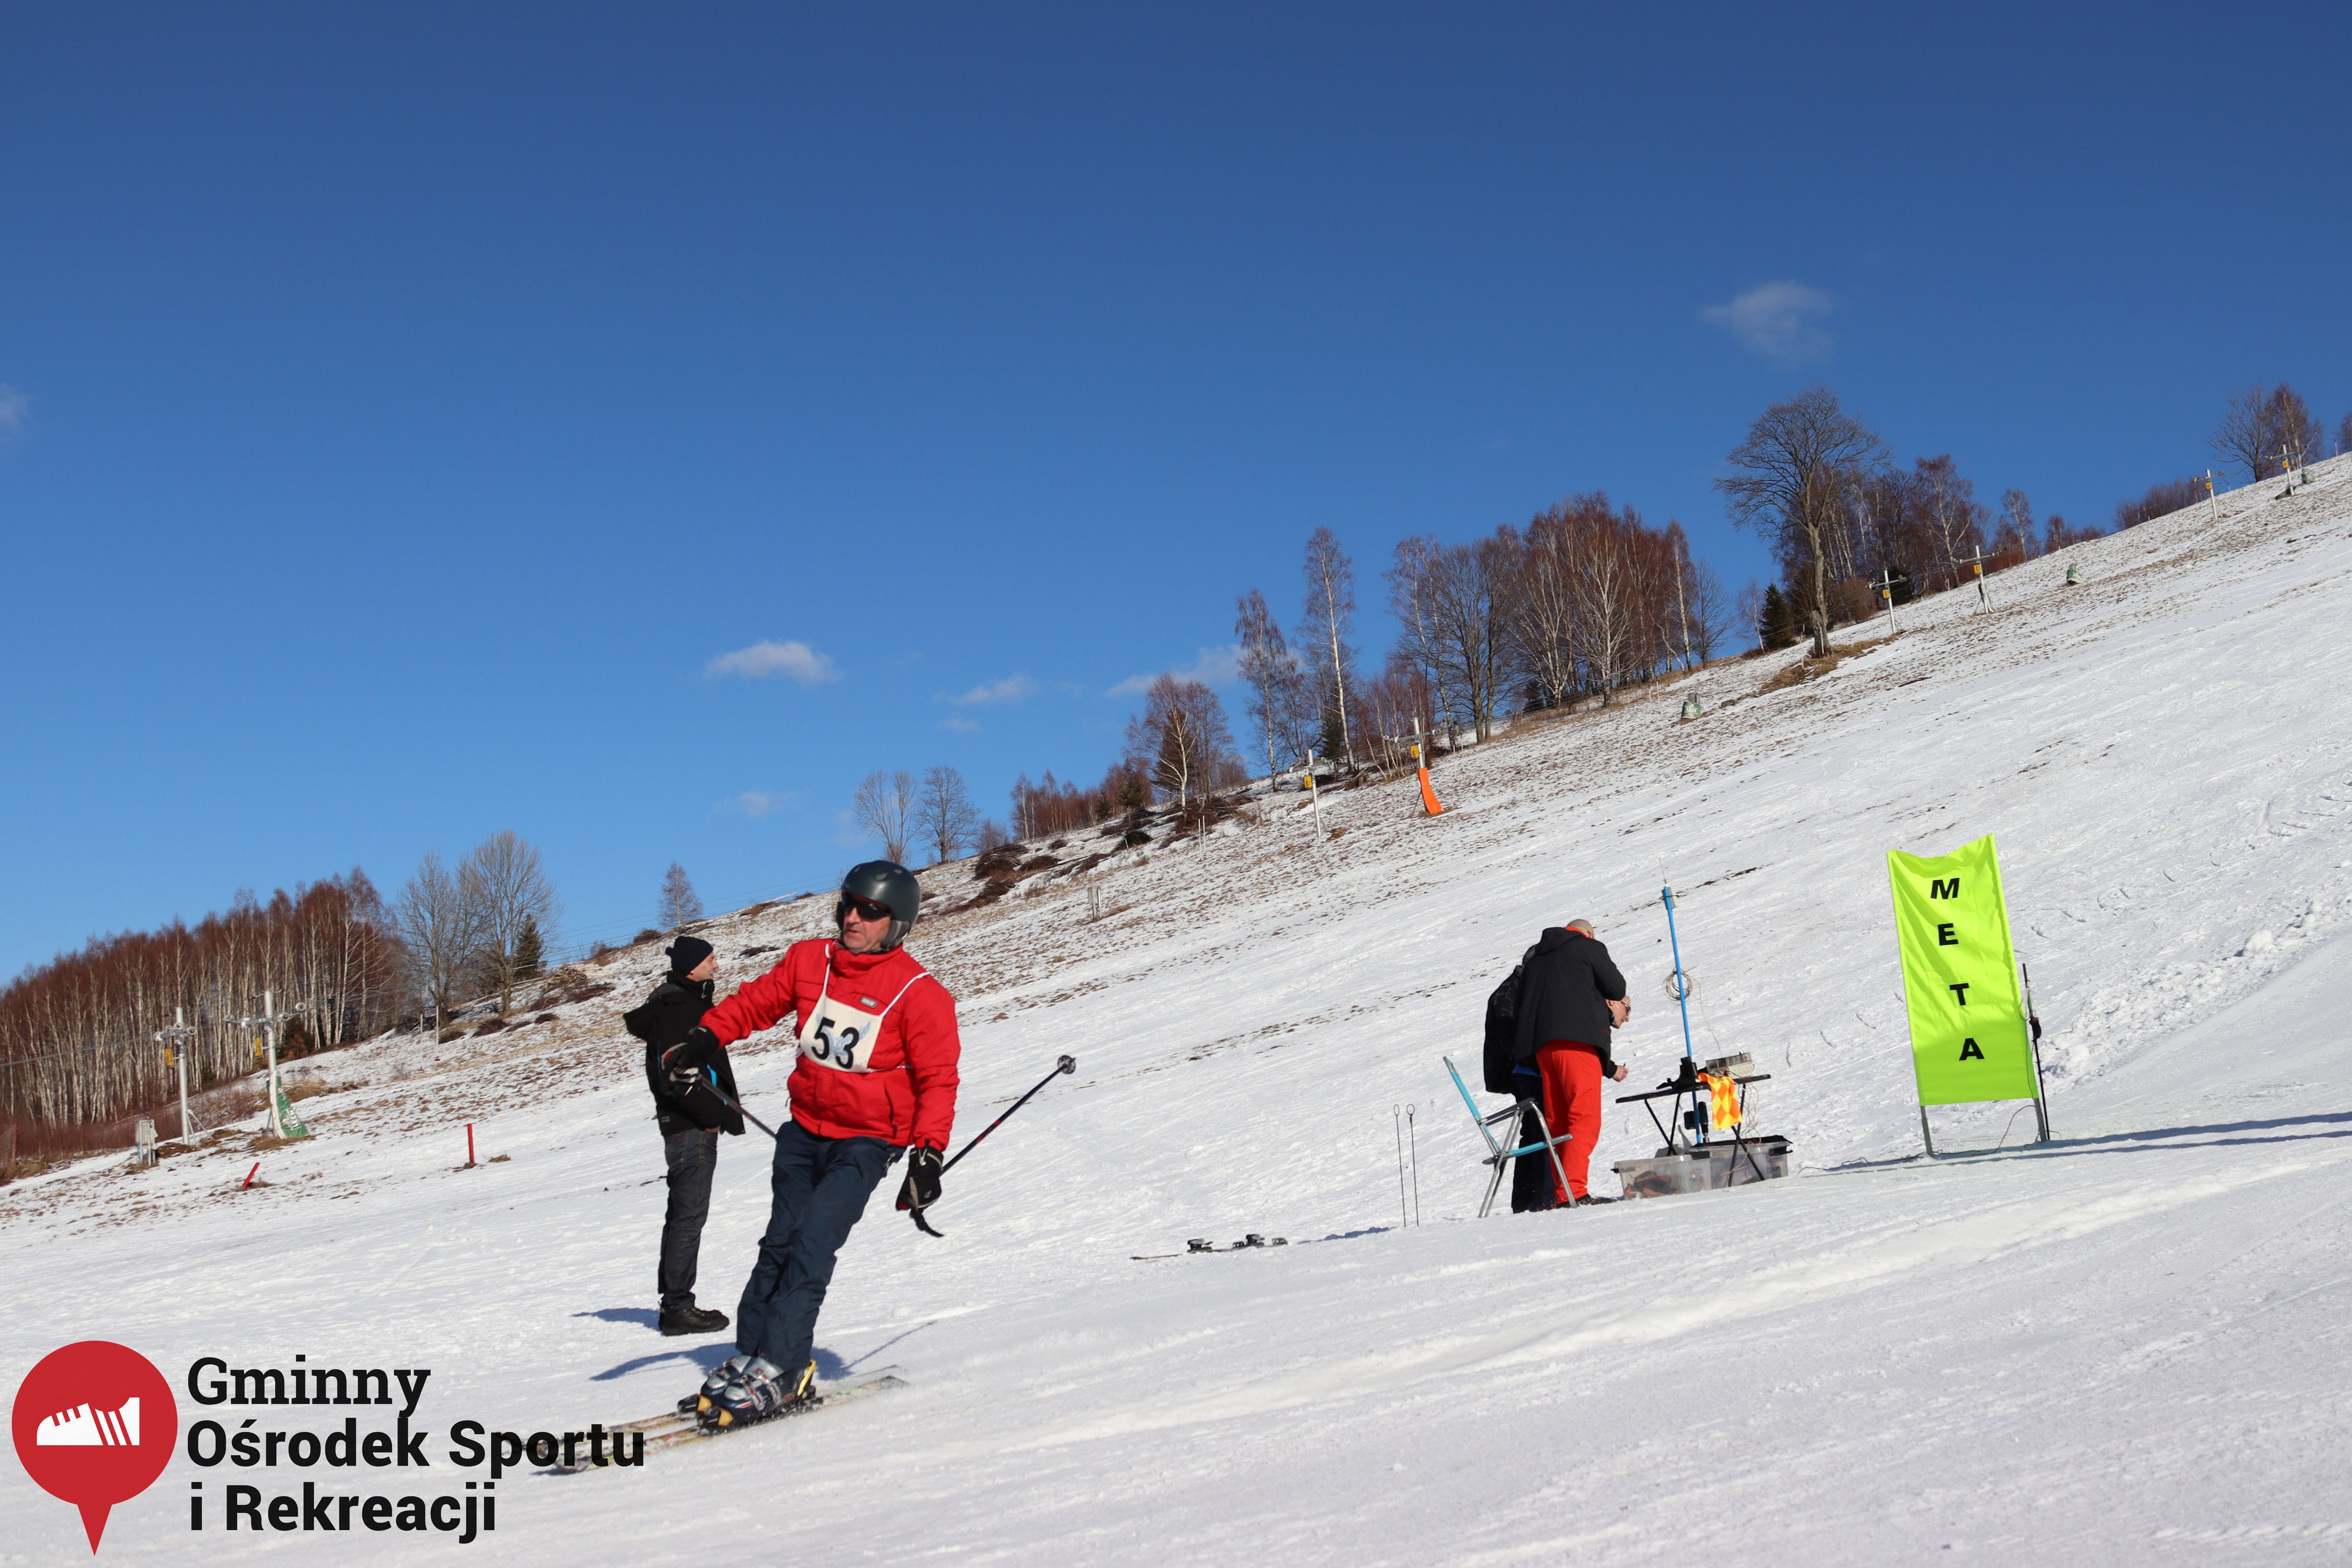 2022.02.12 - 18. Mistrzostwa Gminy Woszakowice w narciarstwie098.jpg - 2,02 MB